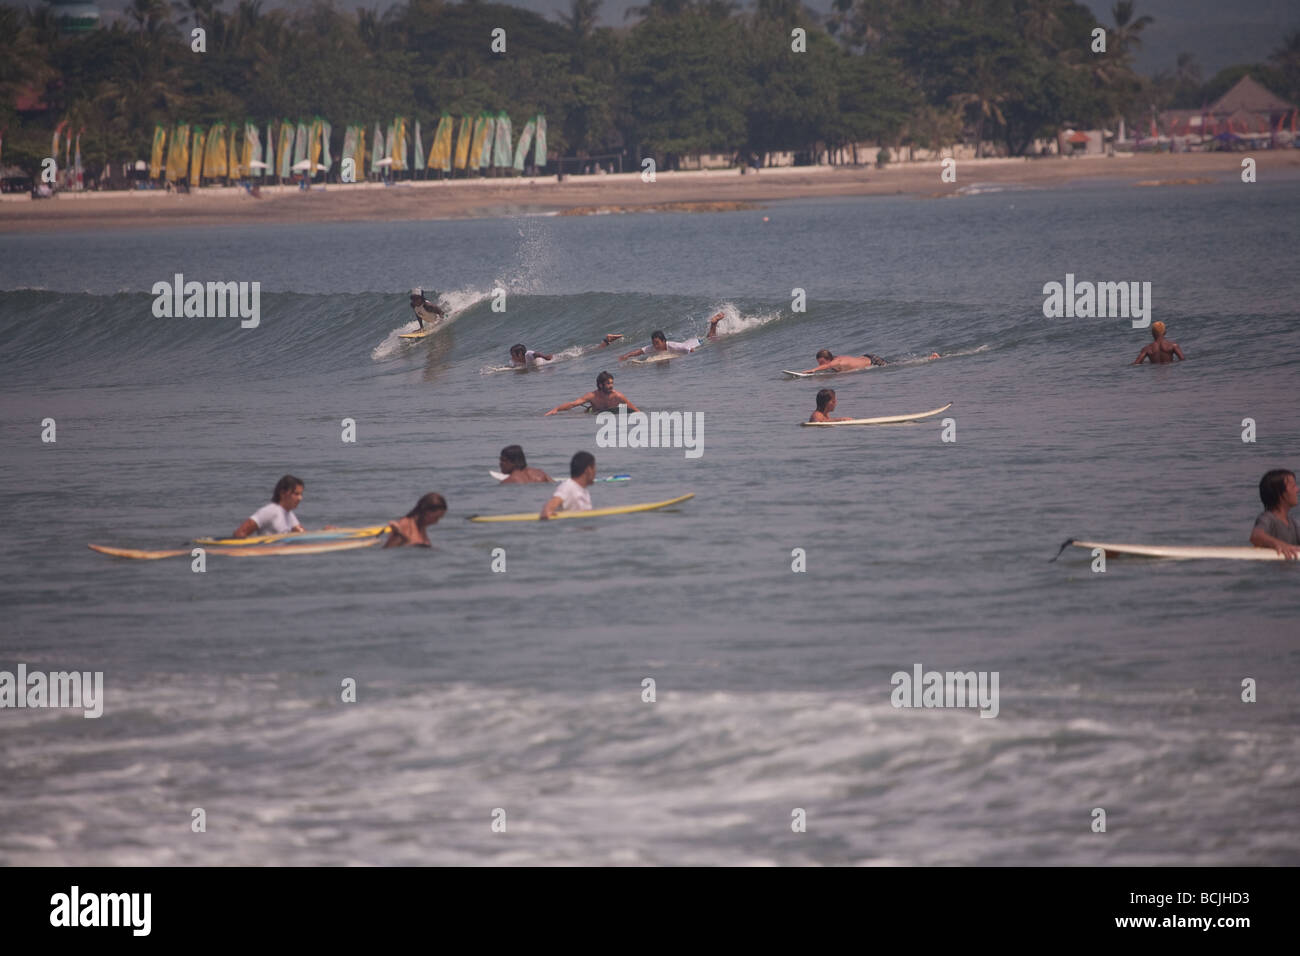 Surfen Surfbrett vor Ort Mob Ozean Meer reiten Baby Fun-sport Bali Kuta schwimmen Welle Extremsport Adrenalin Fahrt jung Stockfoto